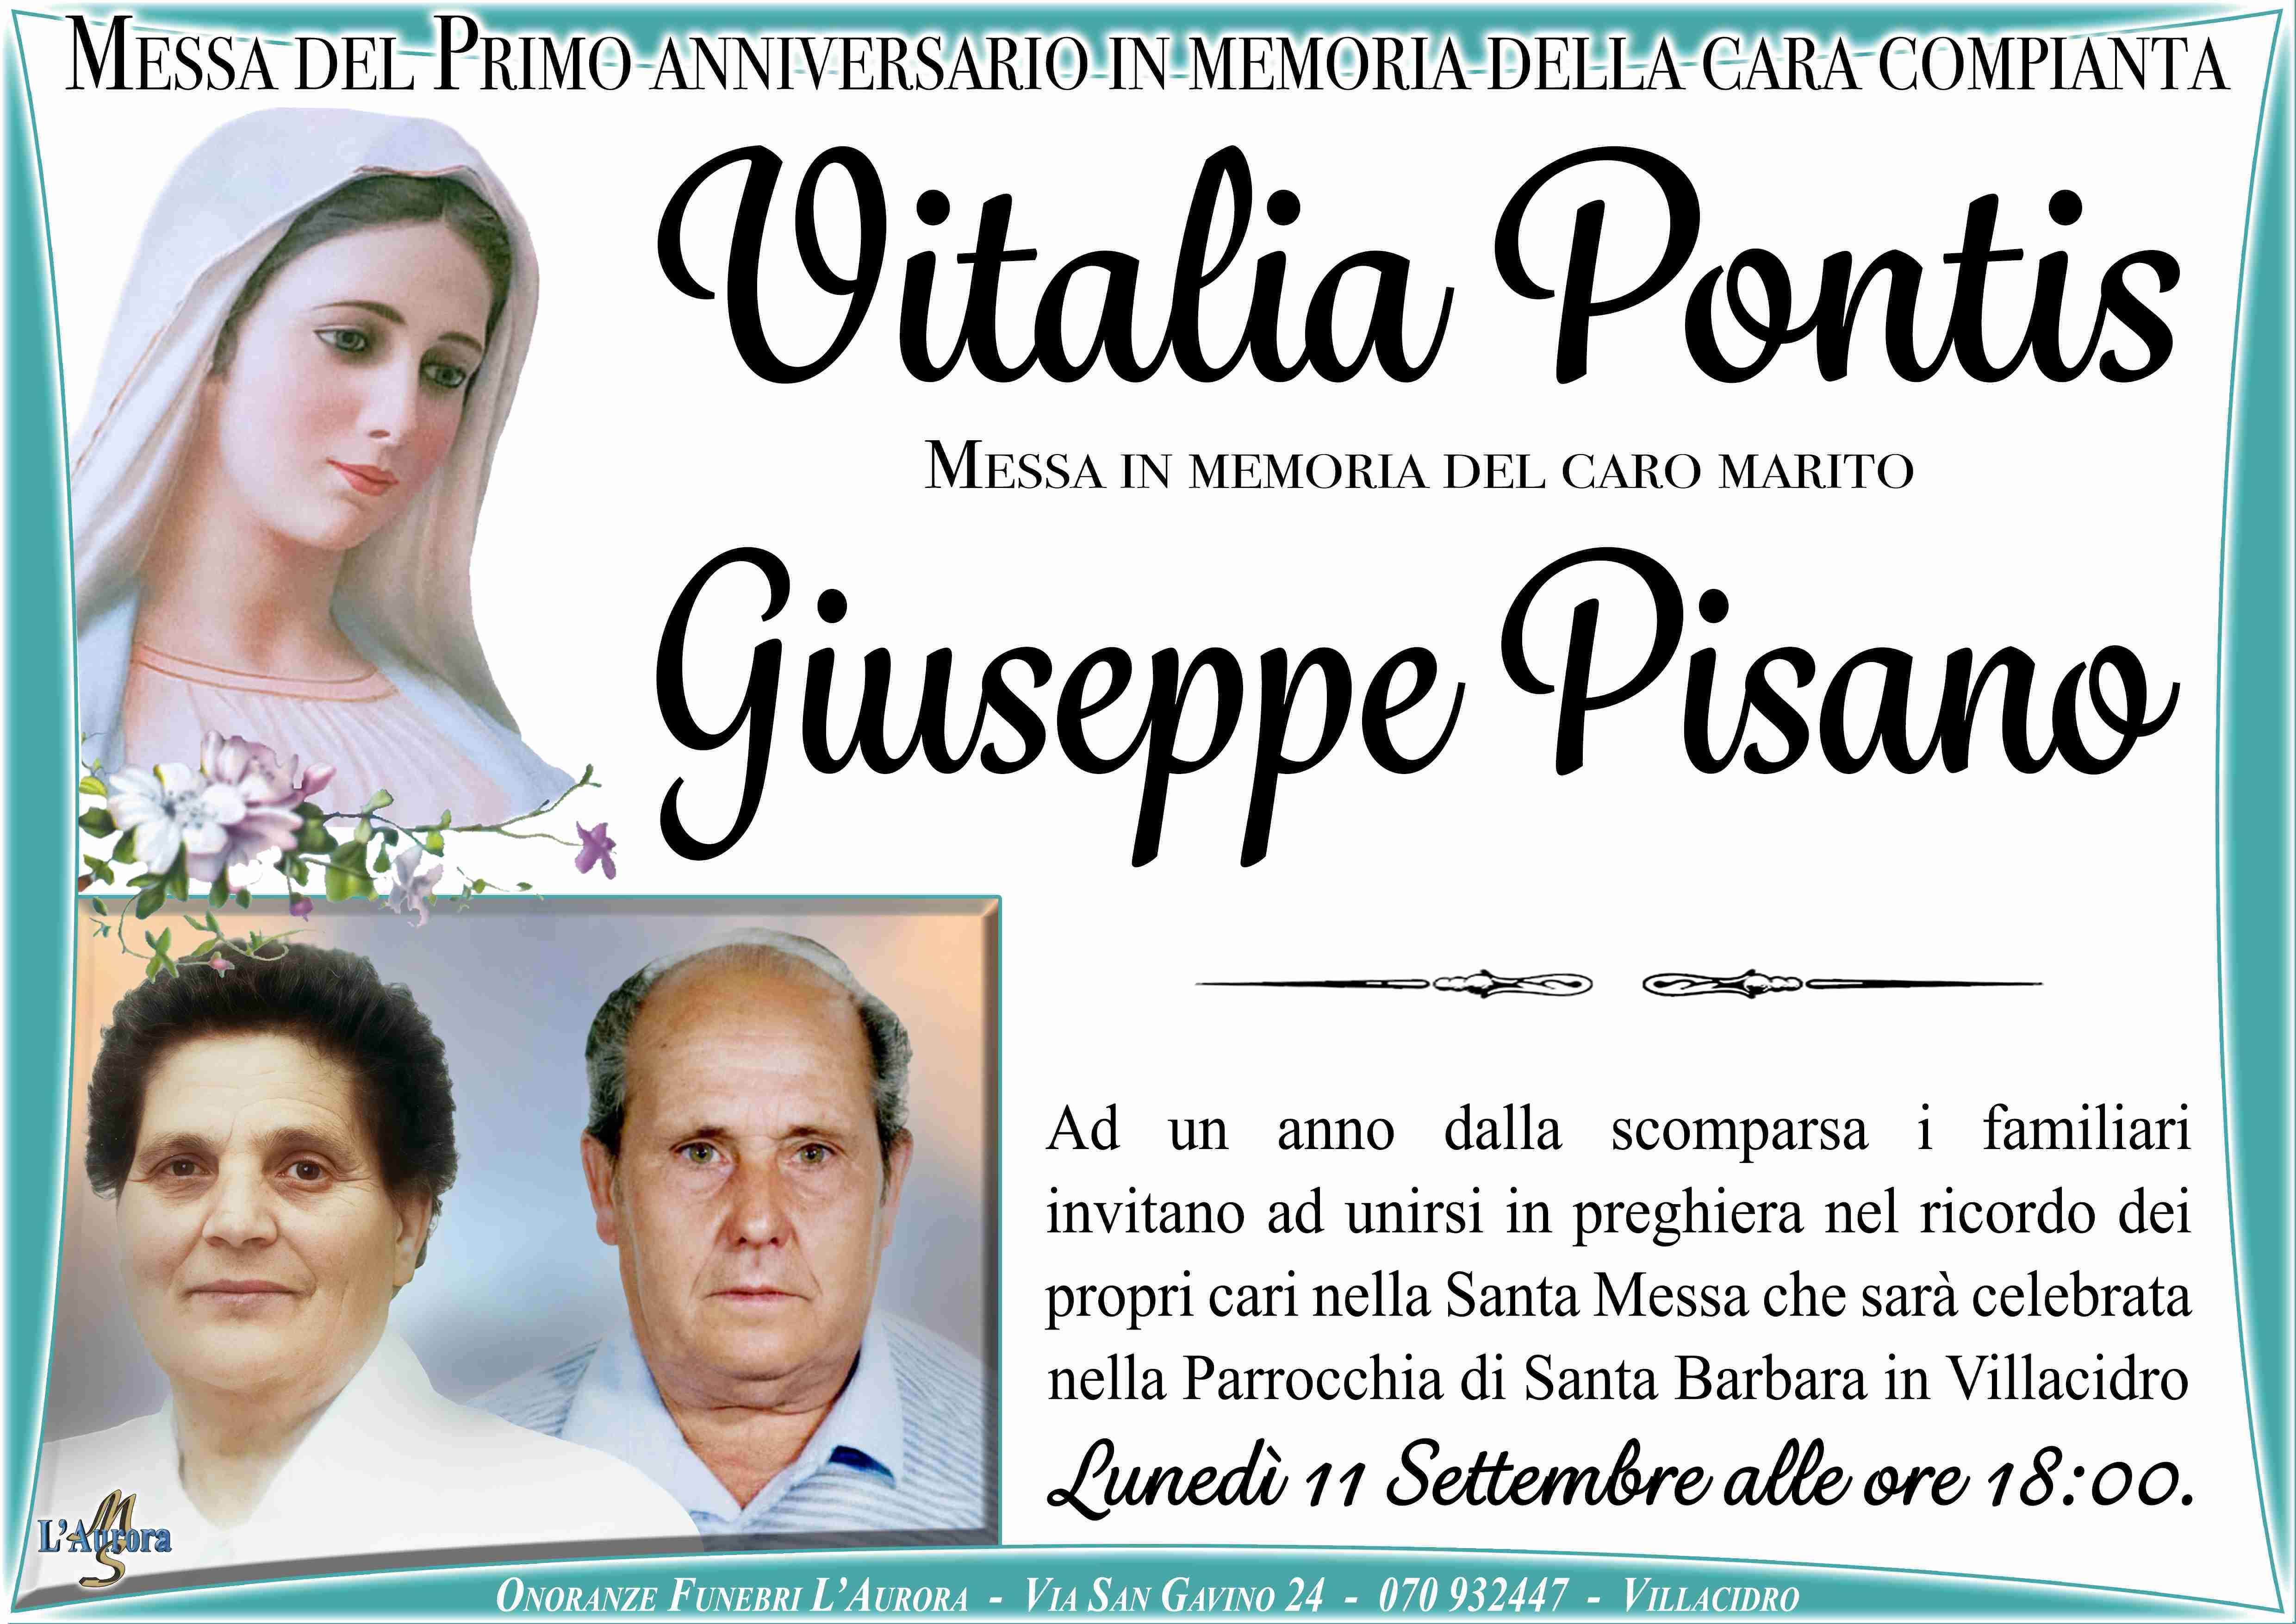 Vitalia Pontis